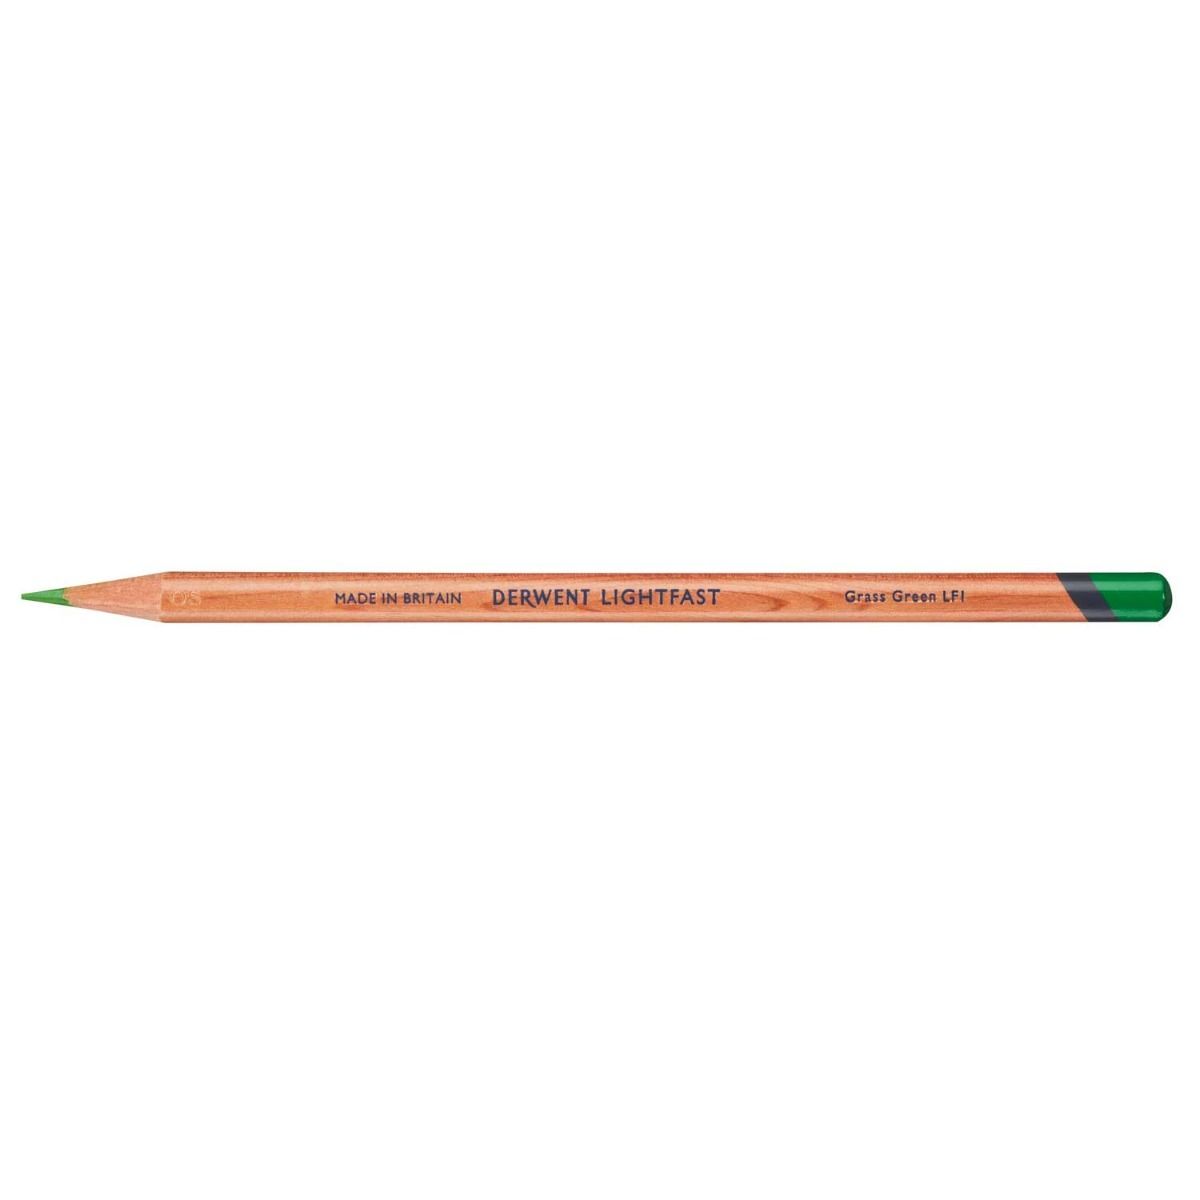 Derwent Lightfast Pencil Colour: Grass Green